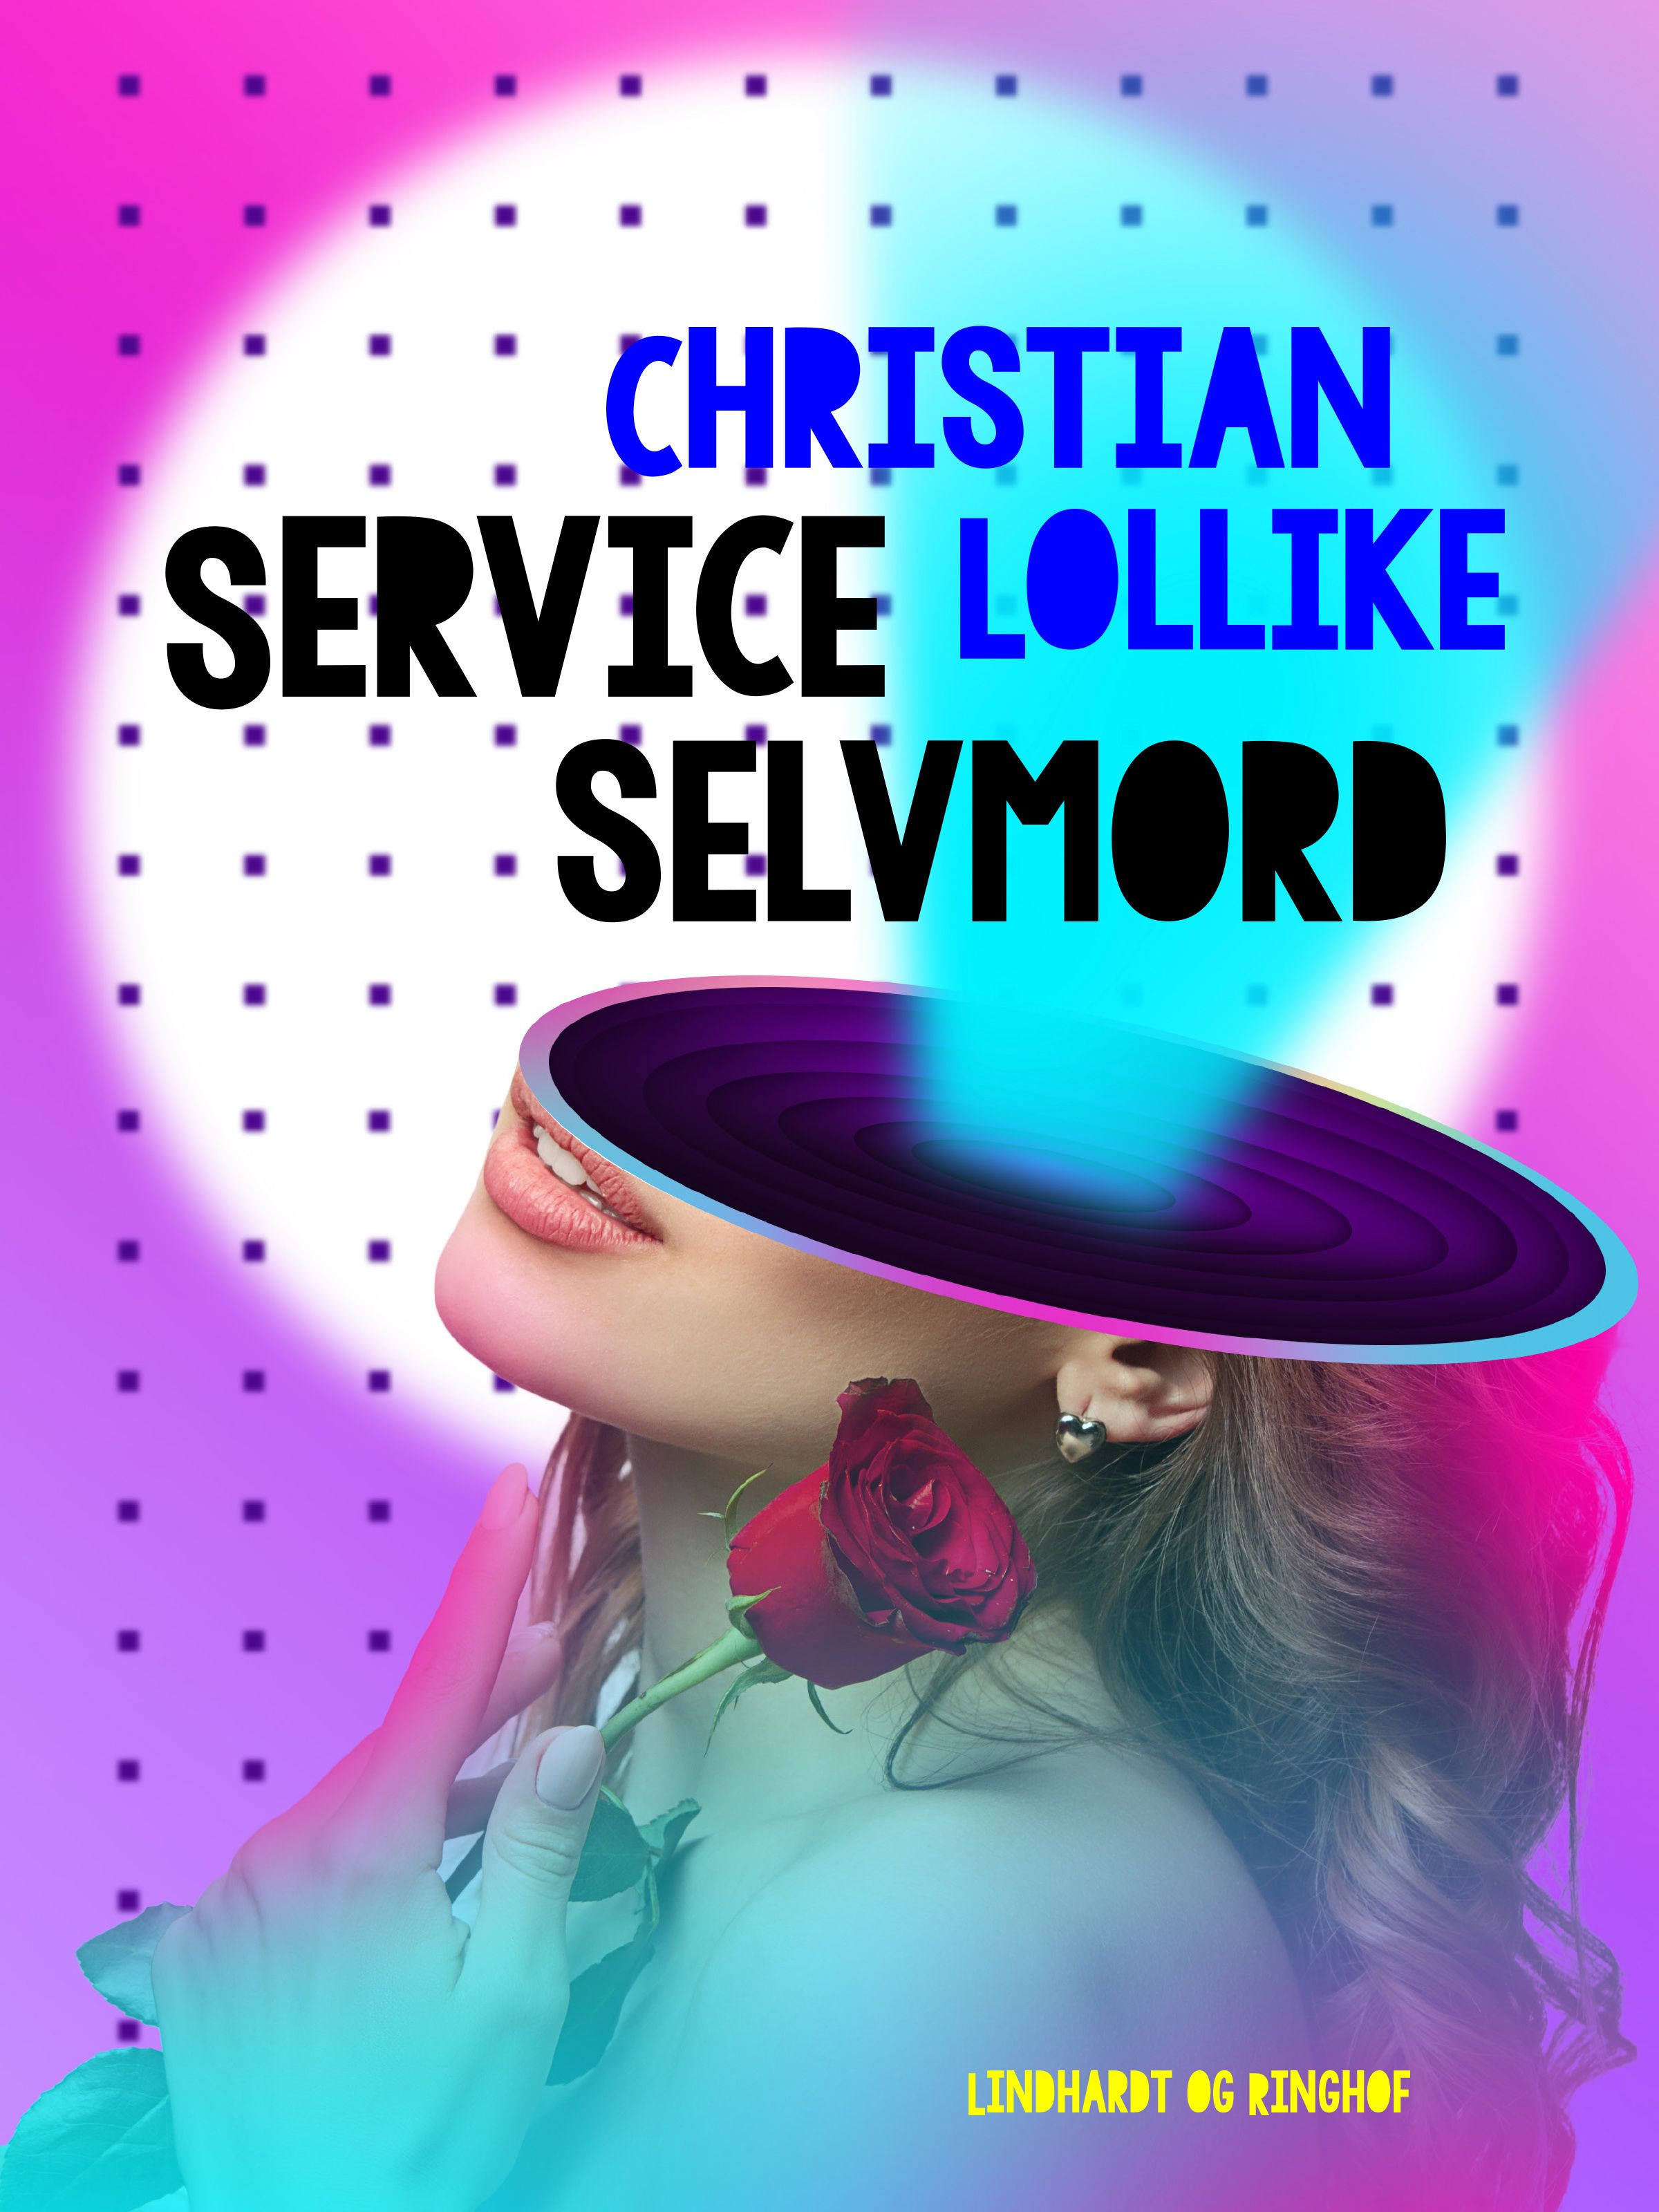 Service selvmord, e-bok av Christian Lollike